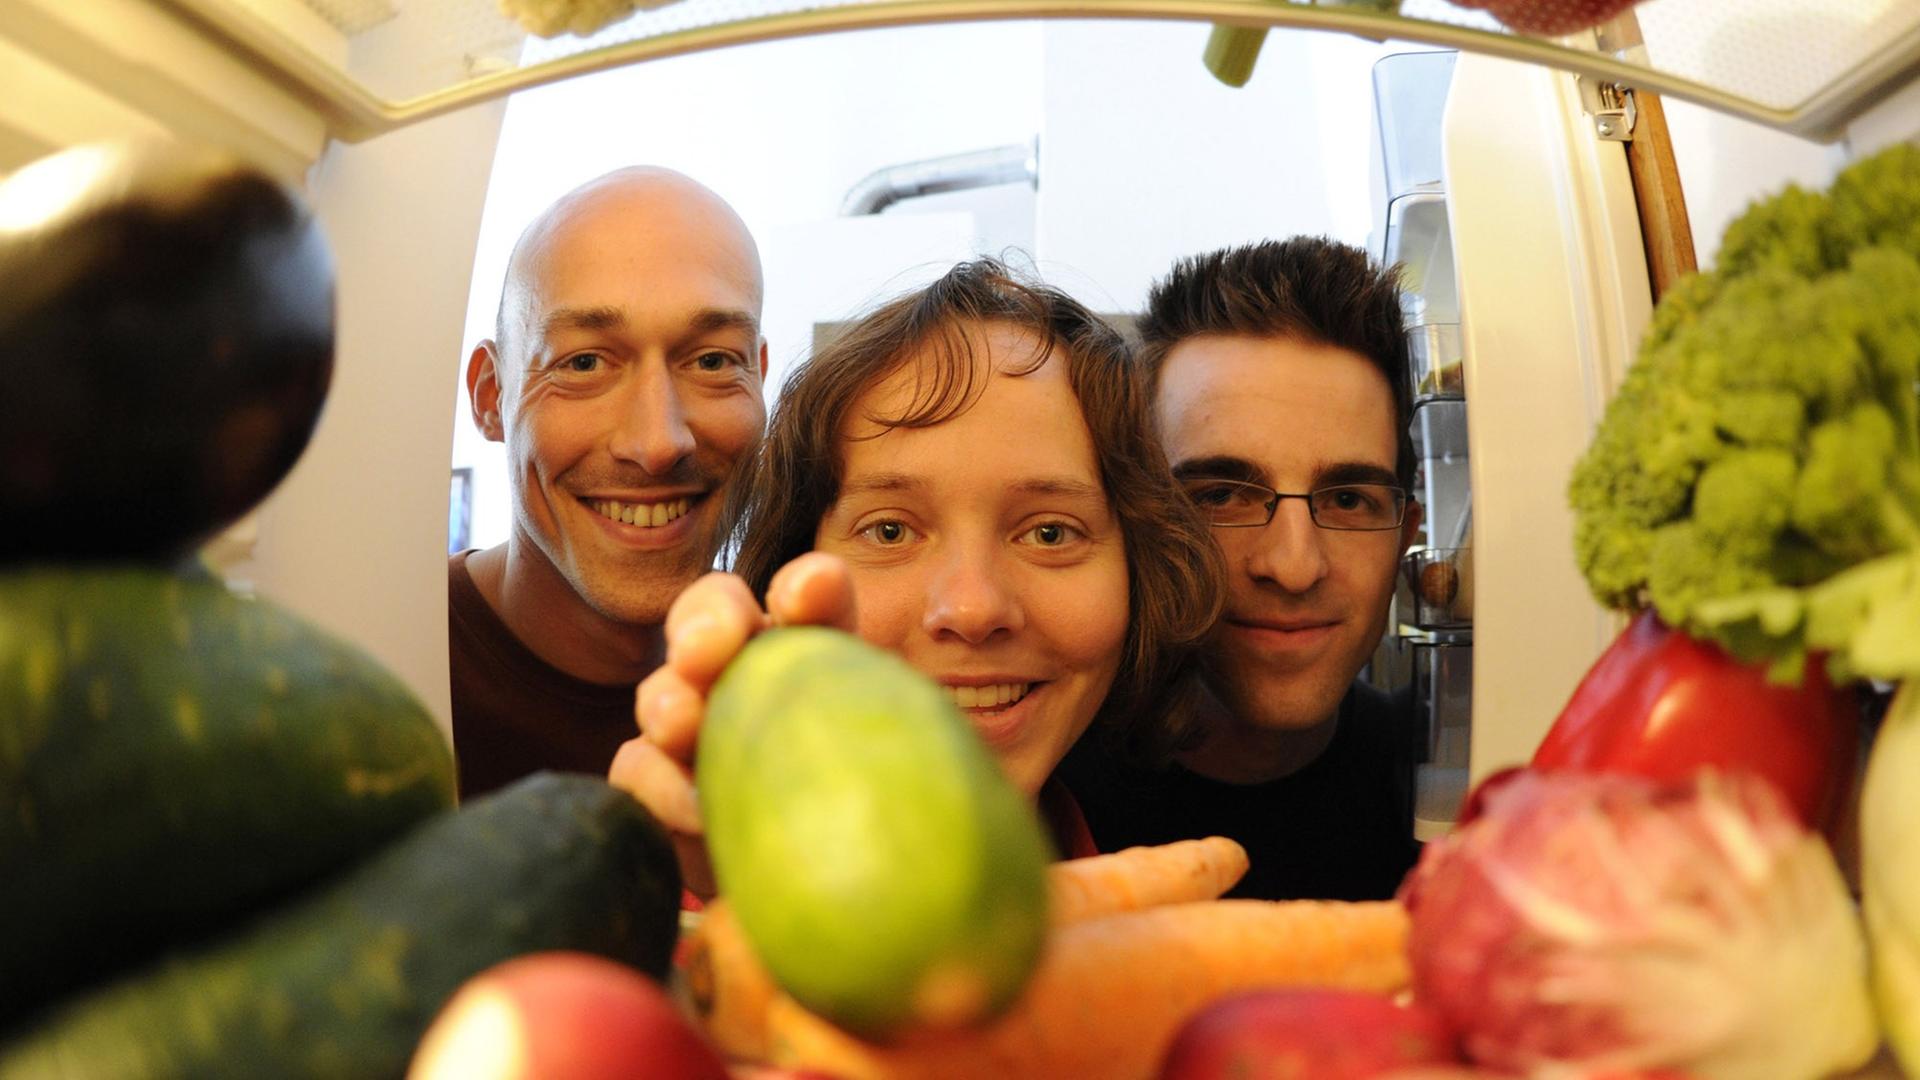 Die sich vegan ernährenden Robert Kresse (l), Silke Bott (M) und Robert Elzer (r) blicken in ihrer Wohngemeinschaft in Karlsruhe in den mit Gemüse gefüllten Kühlschrank (Foto vom 04.08.2010).